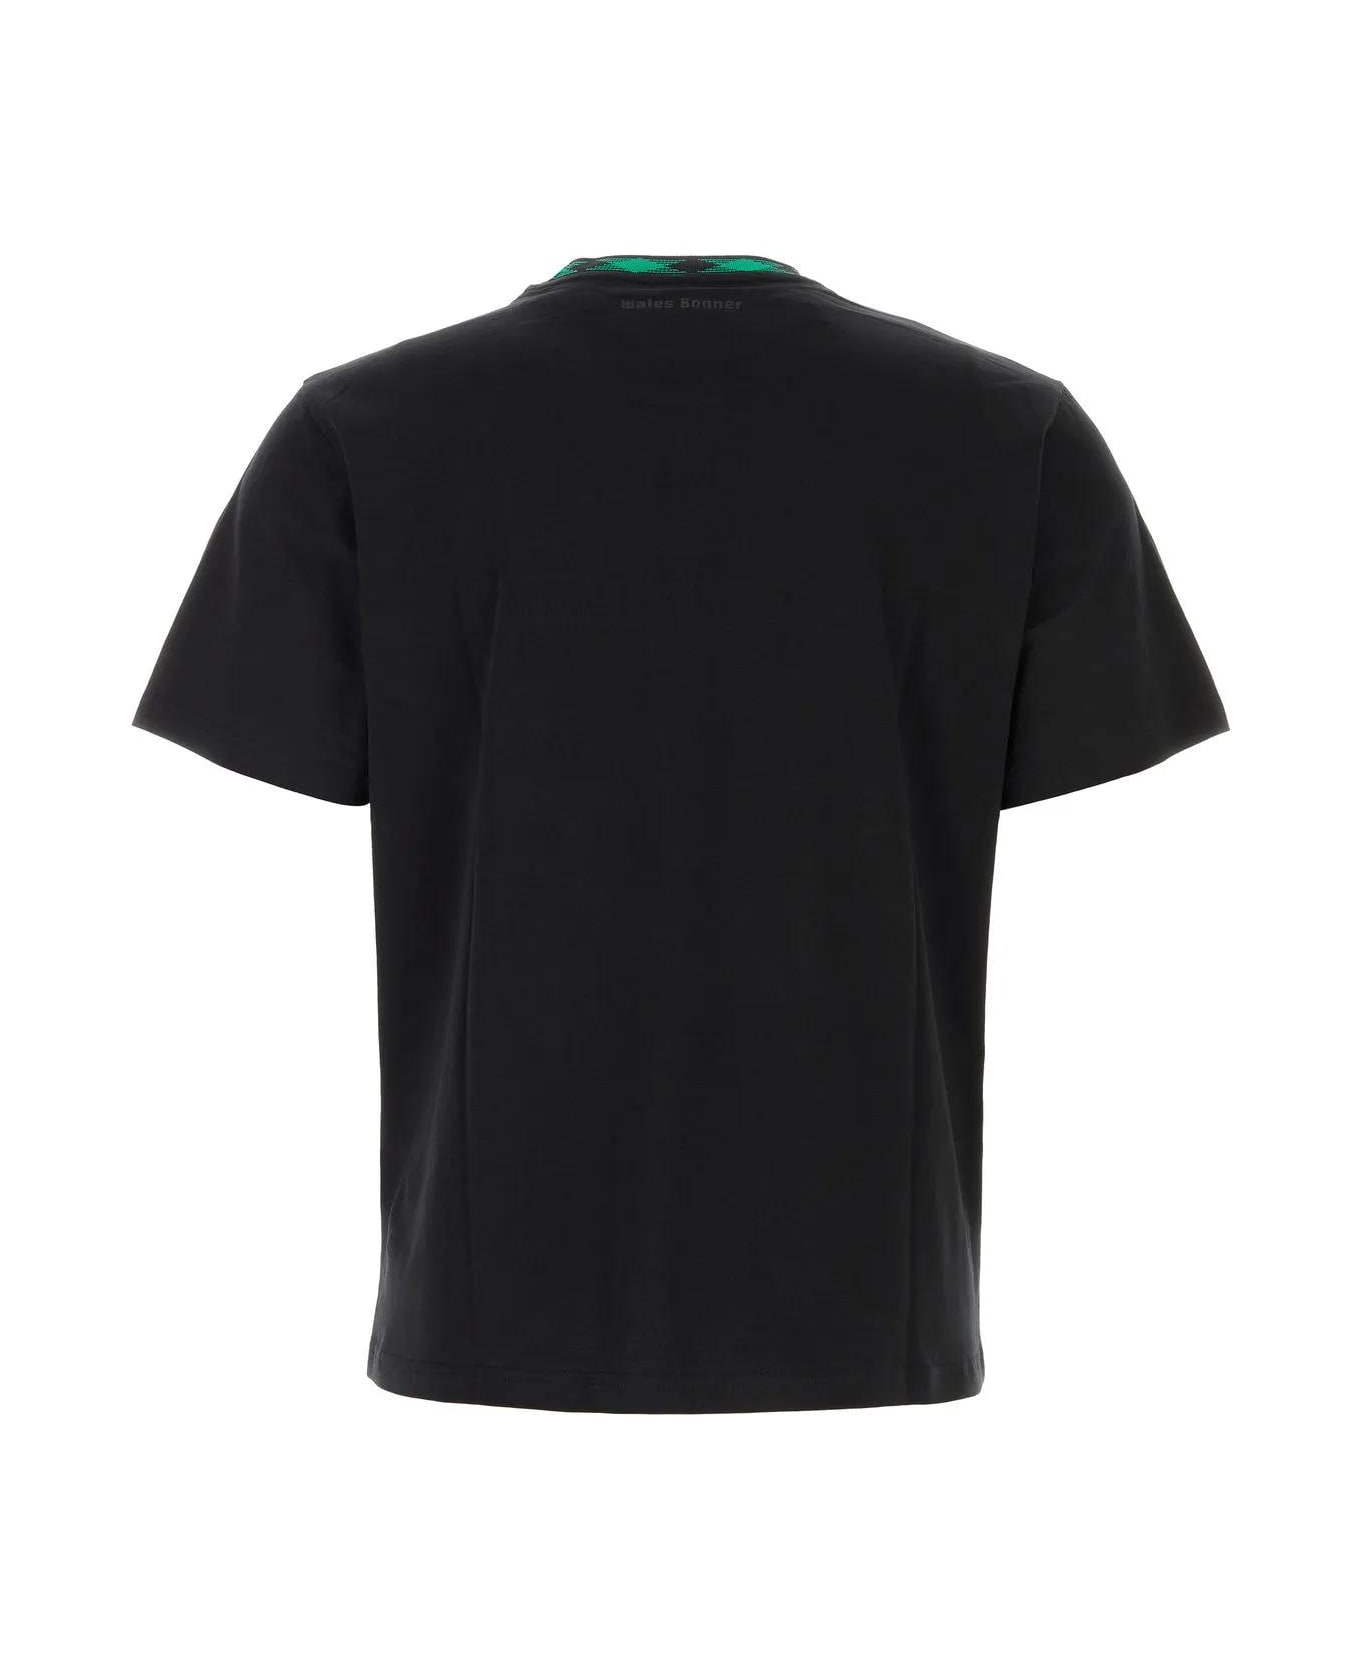 Wales Bonner Black Cotton Original T-shirt - Black